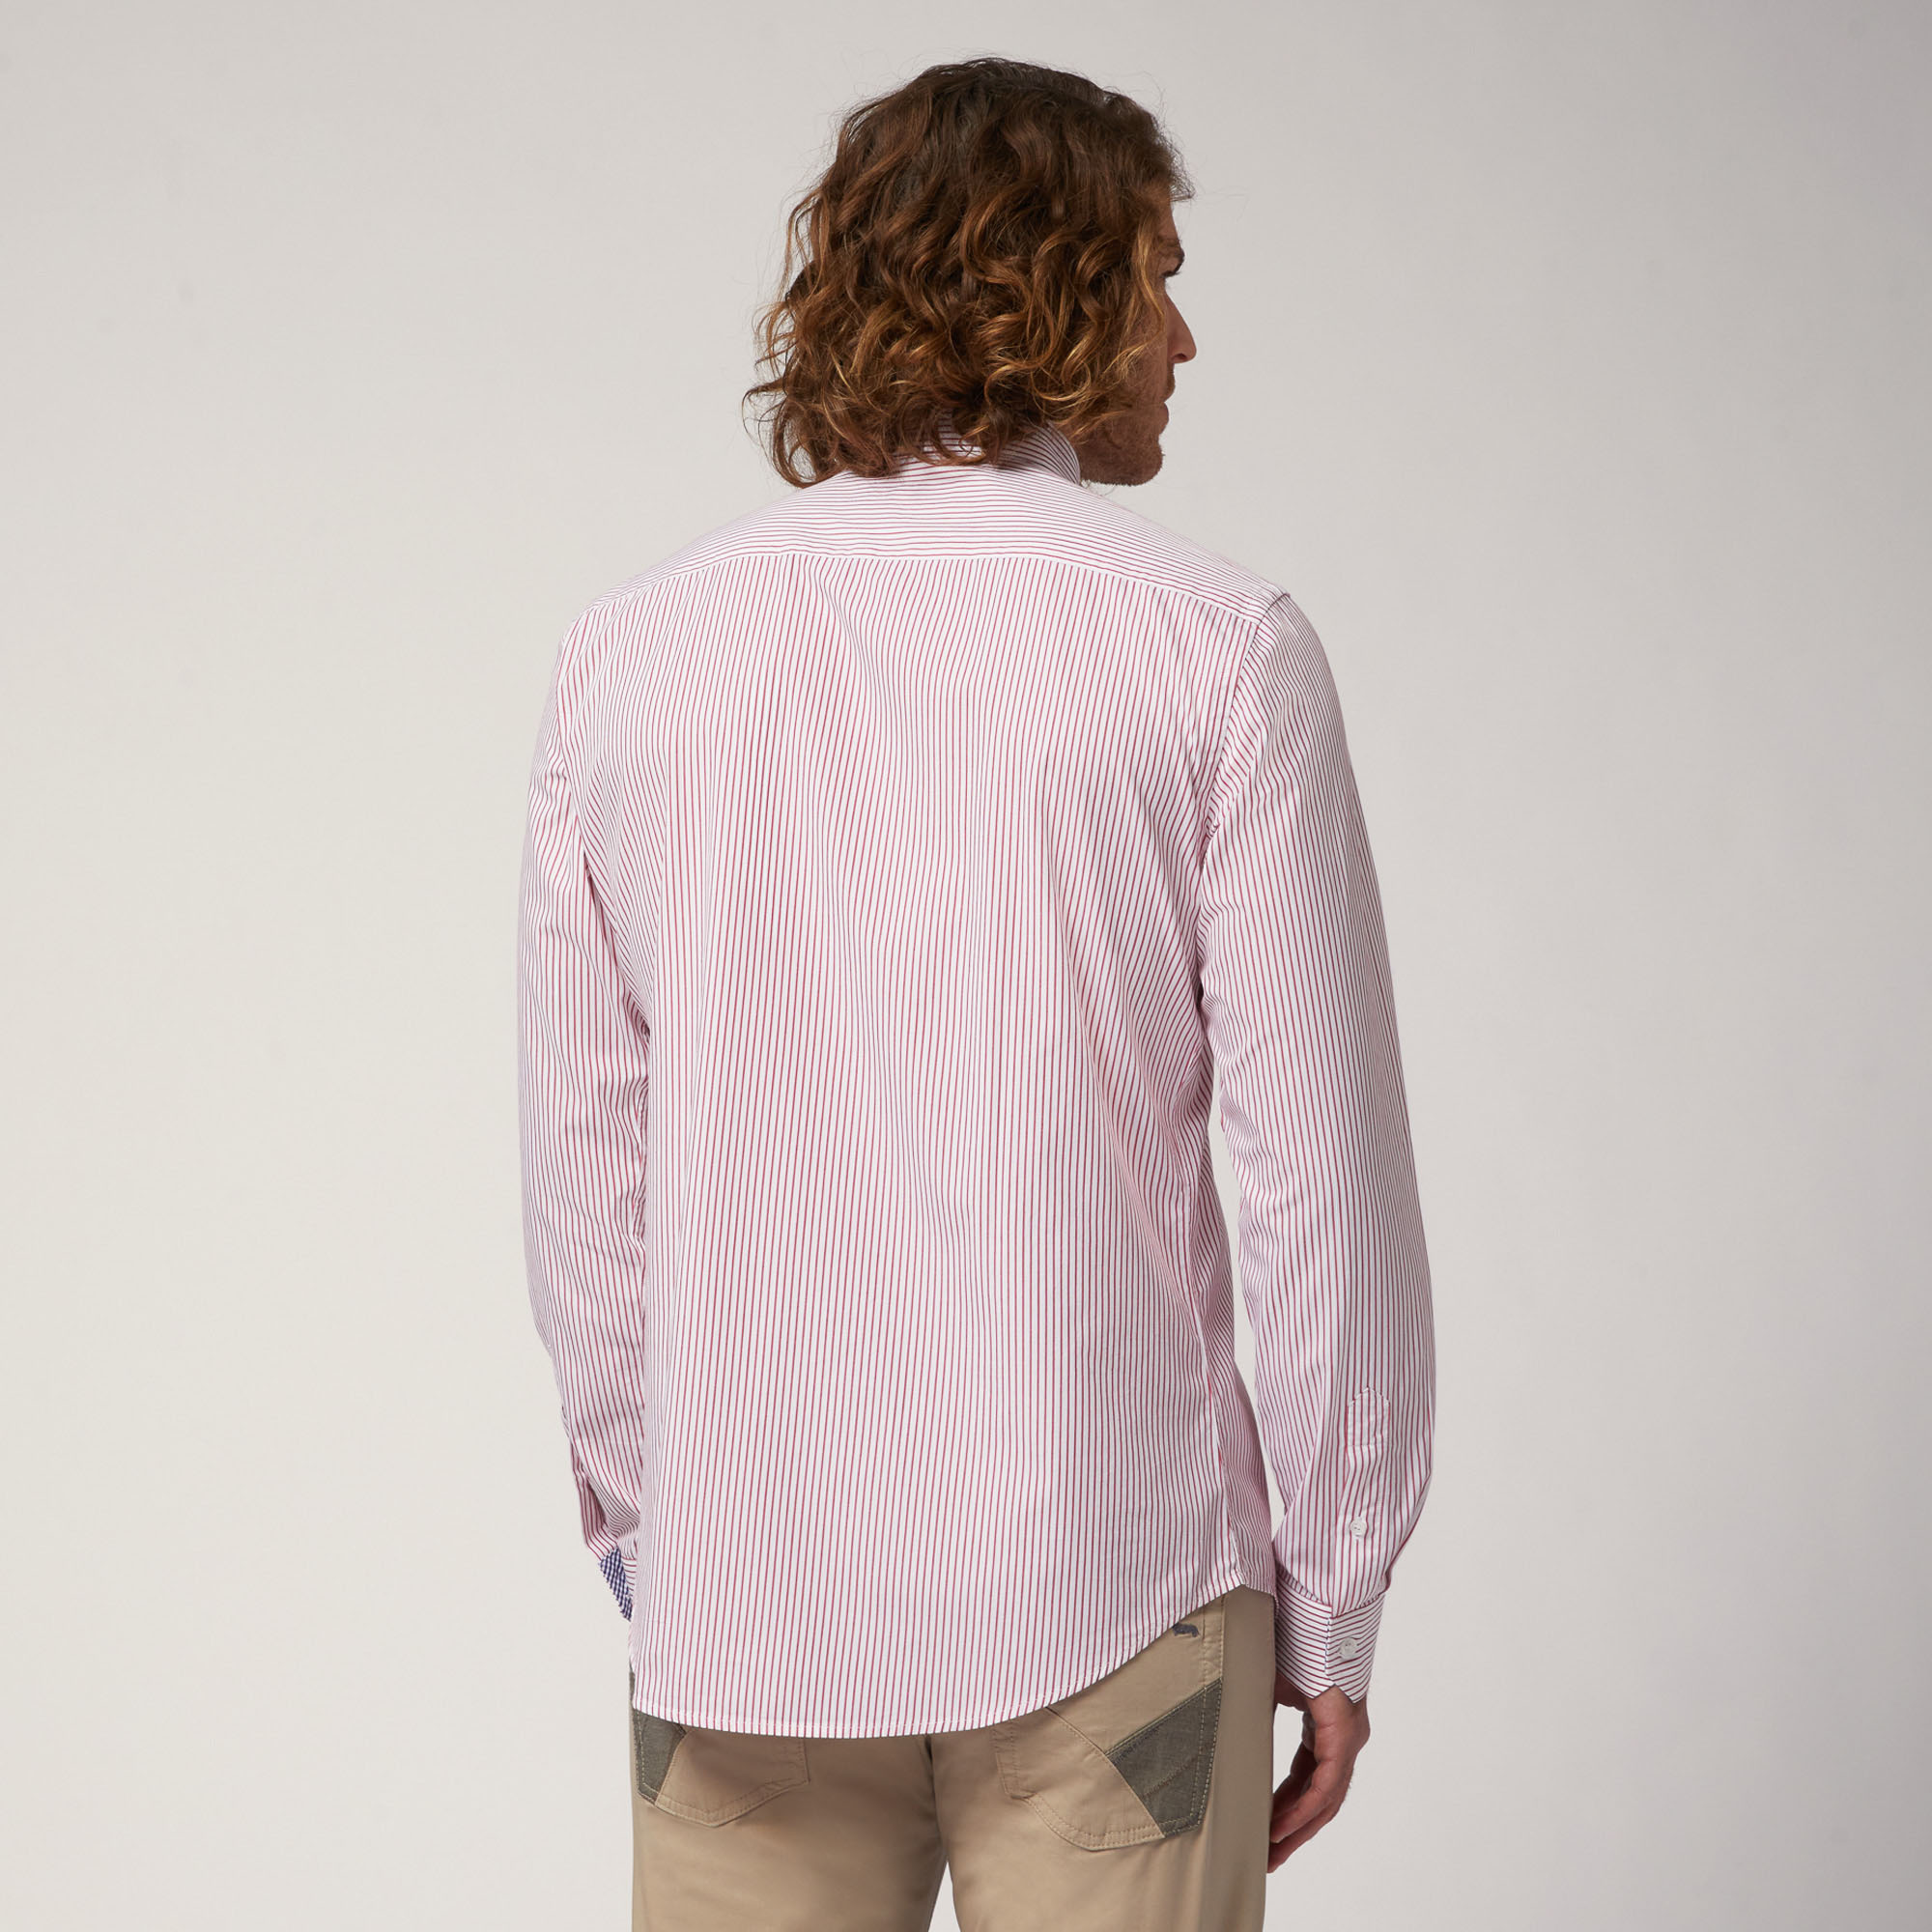 Camicia In Popeline Di Cotone Organico A Righe, Rosso, large image number 1